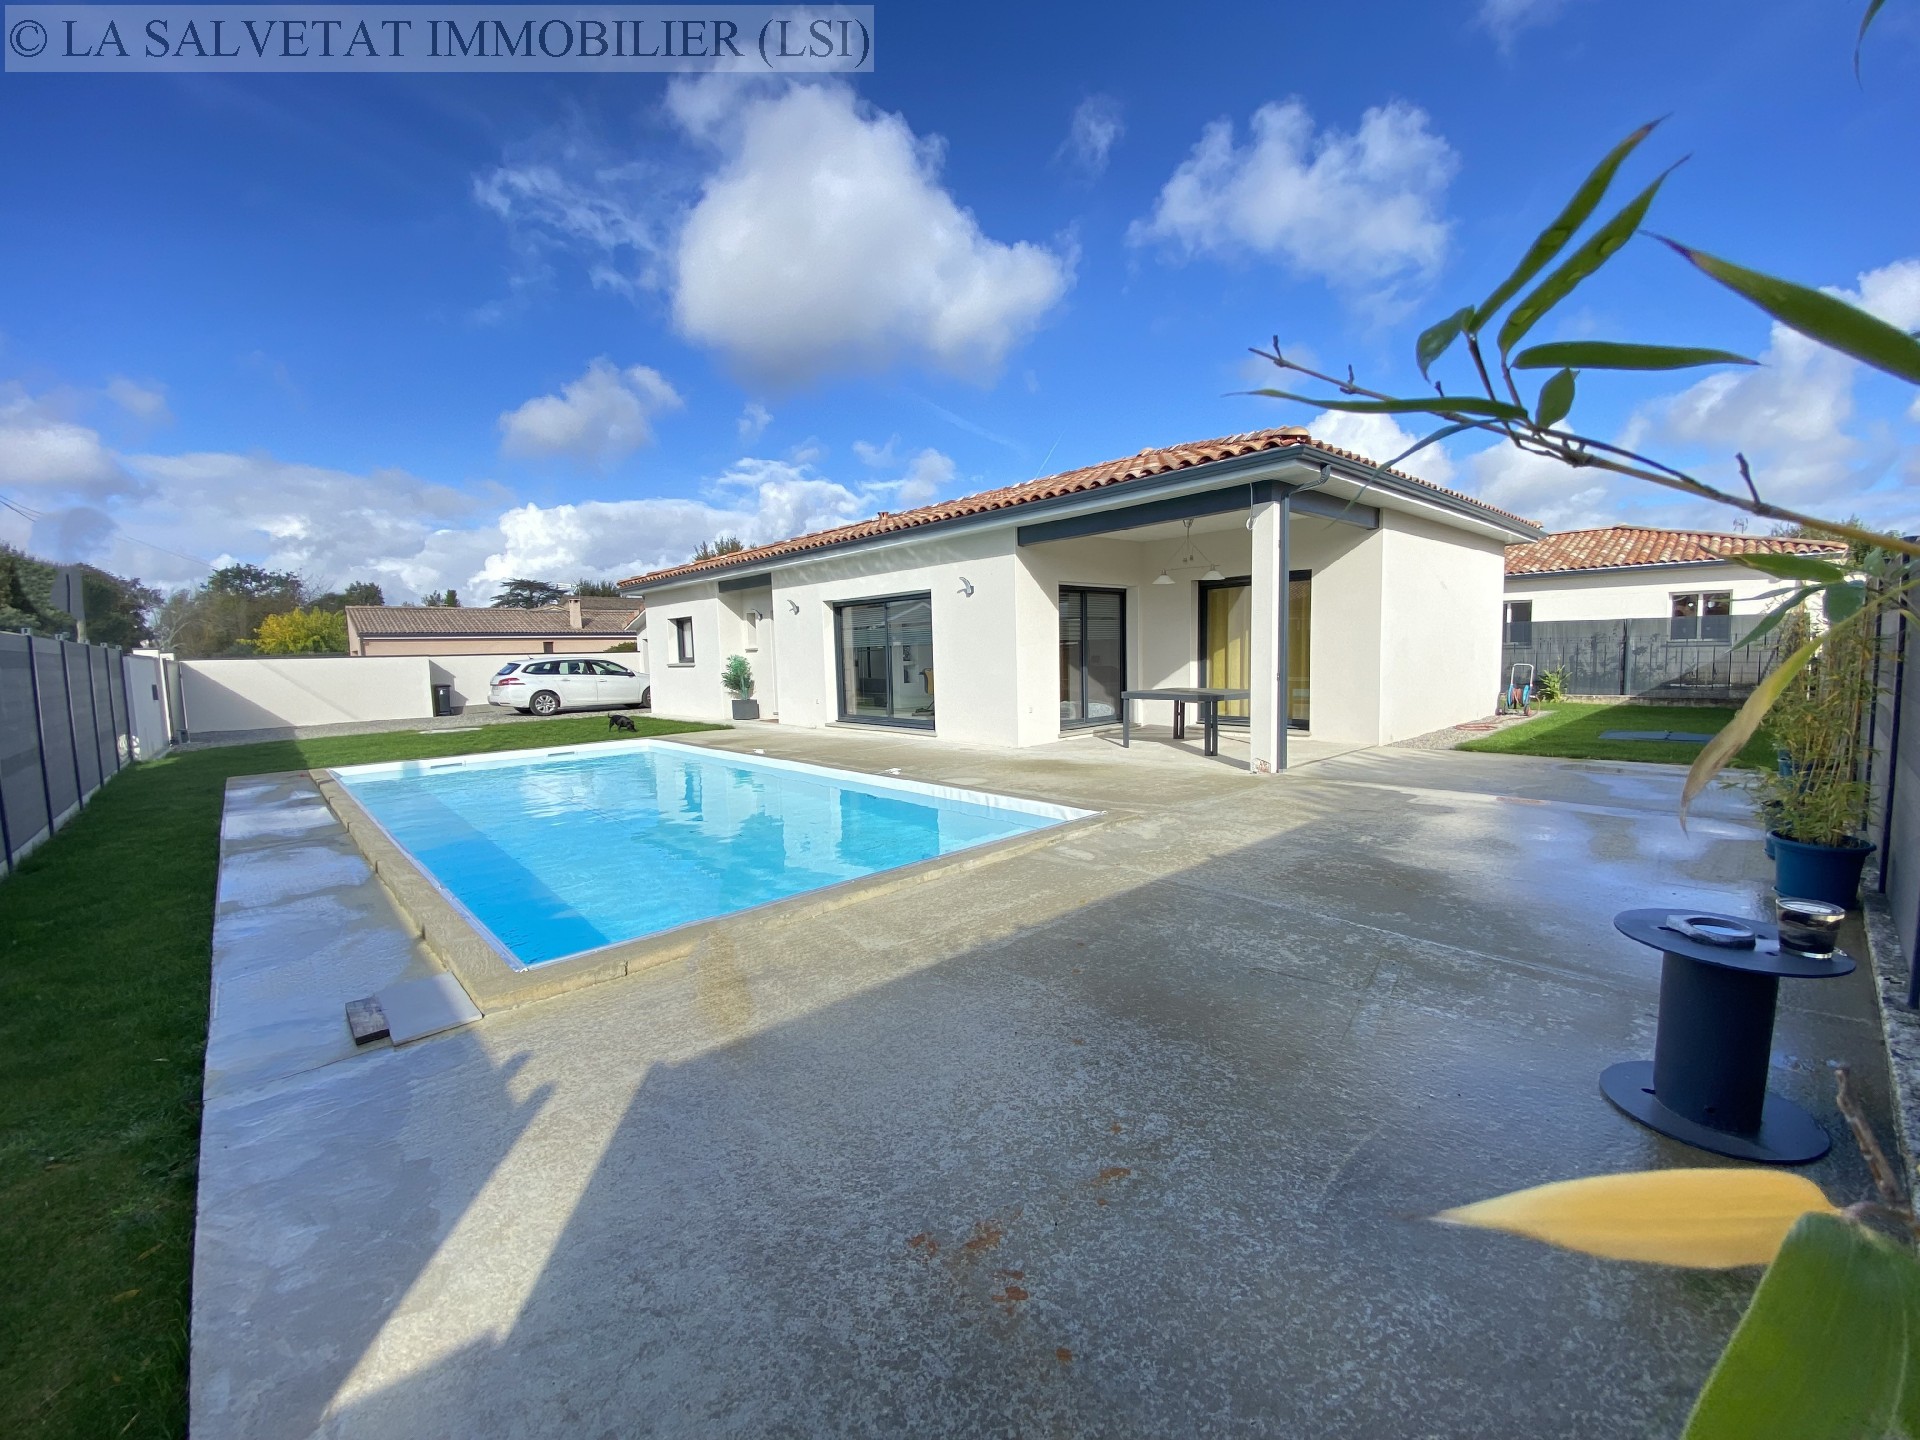 Vente maison-villa - ST LYS<br>113 m², 4 pièces